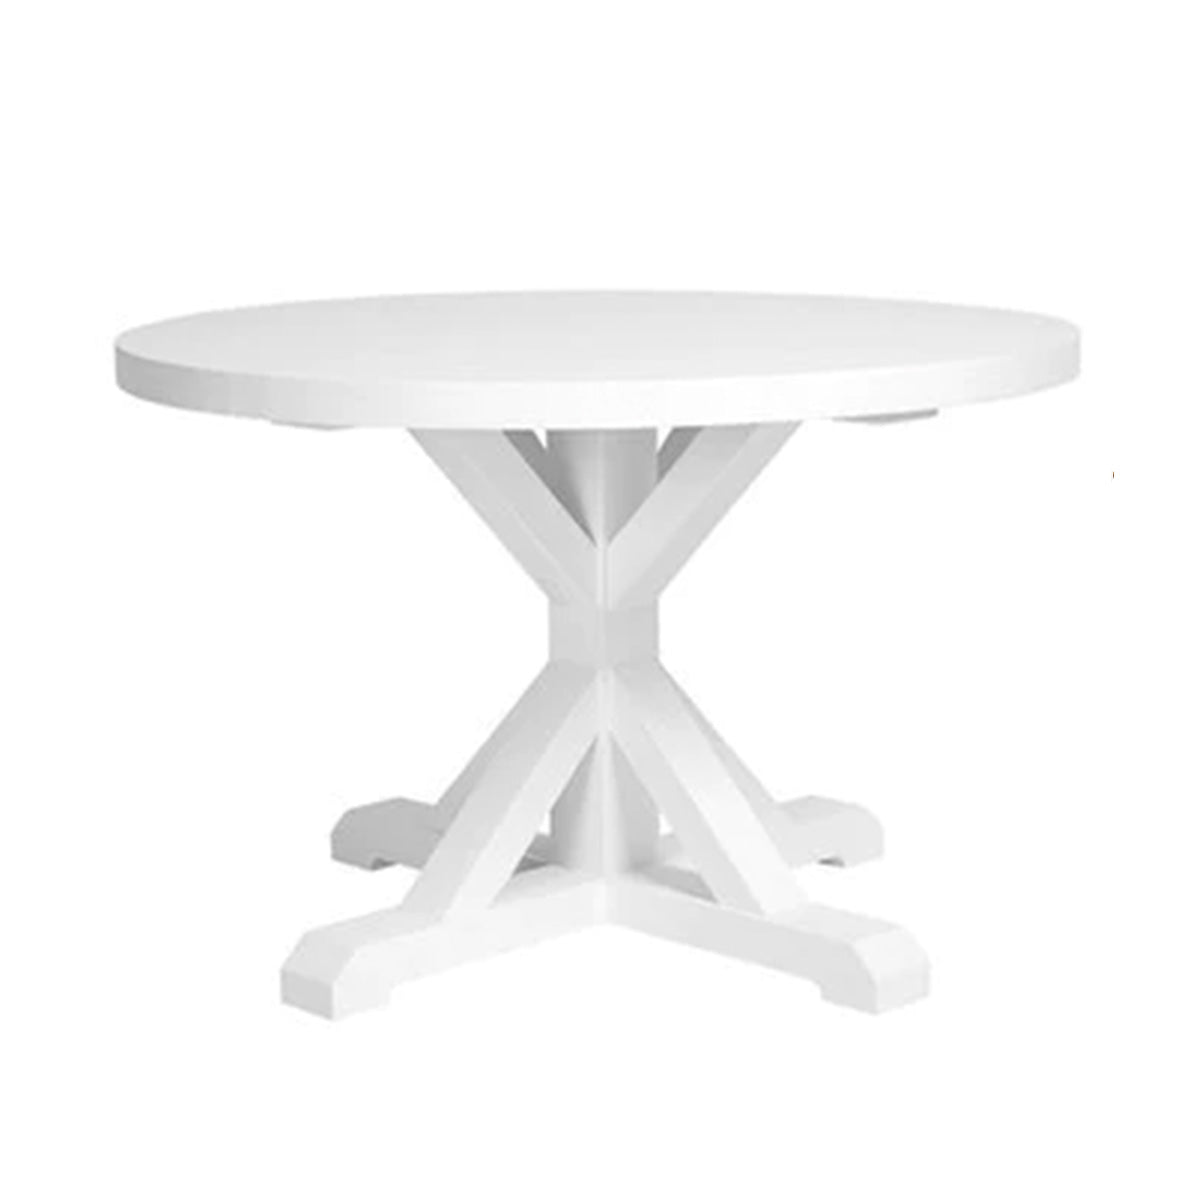 Hamilton White Round Dining Table - 2 Sizes